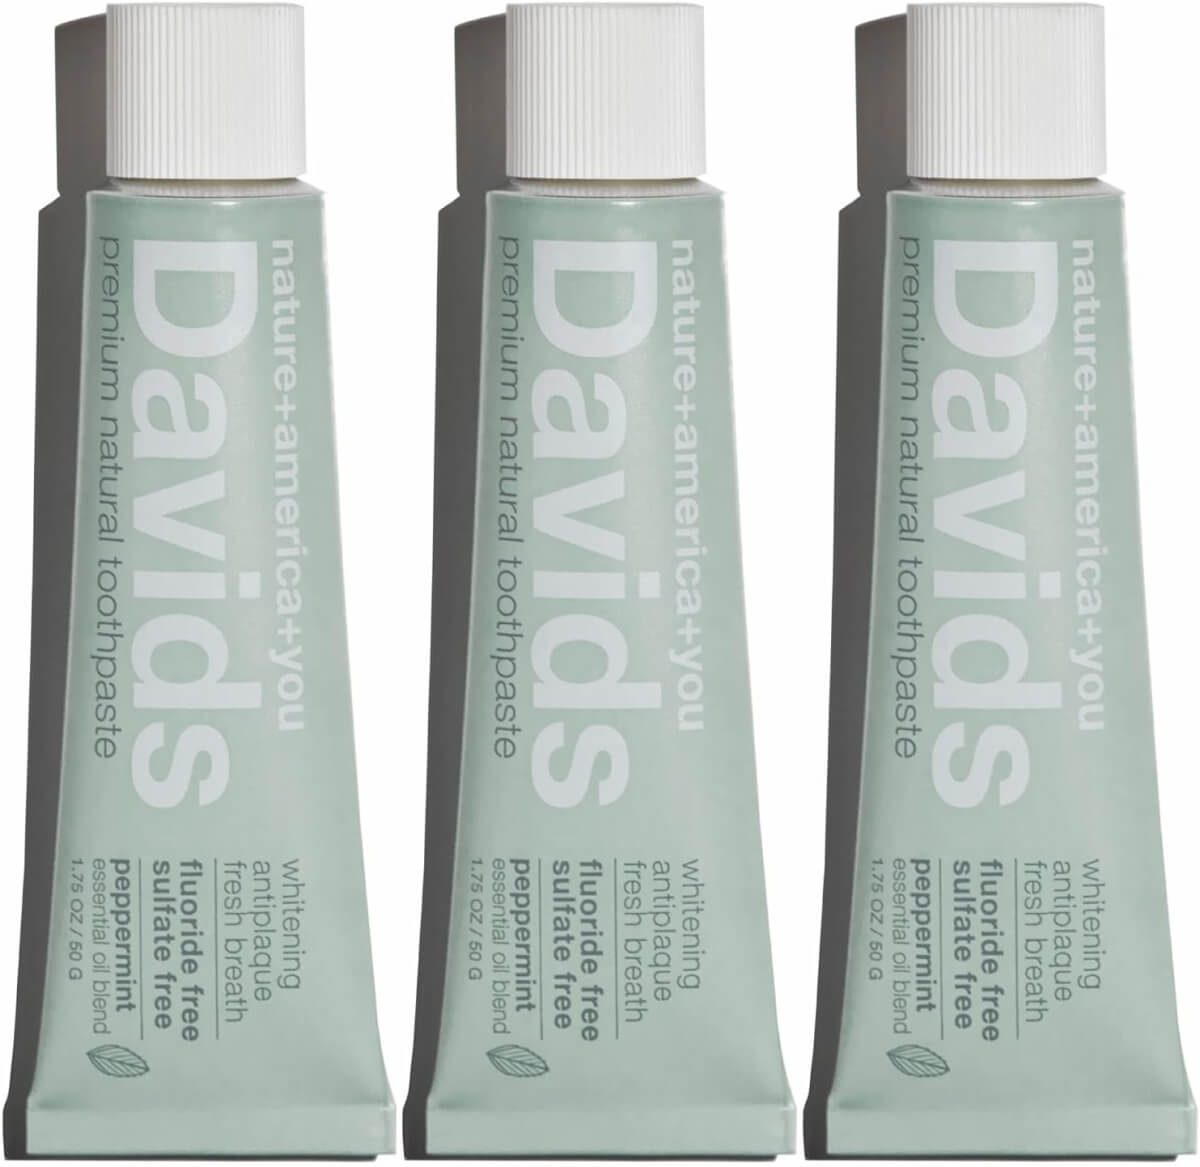 David’s Premium Natural Toothpaste